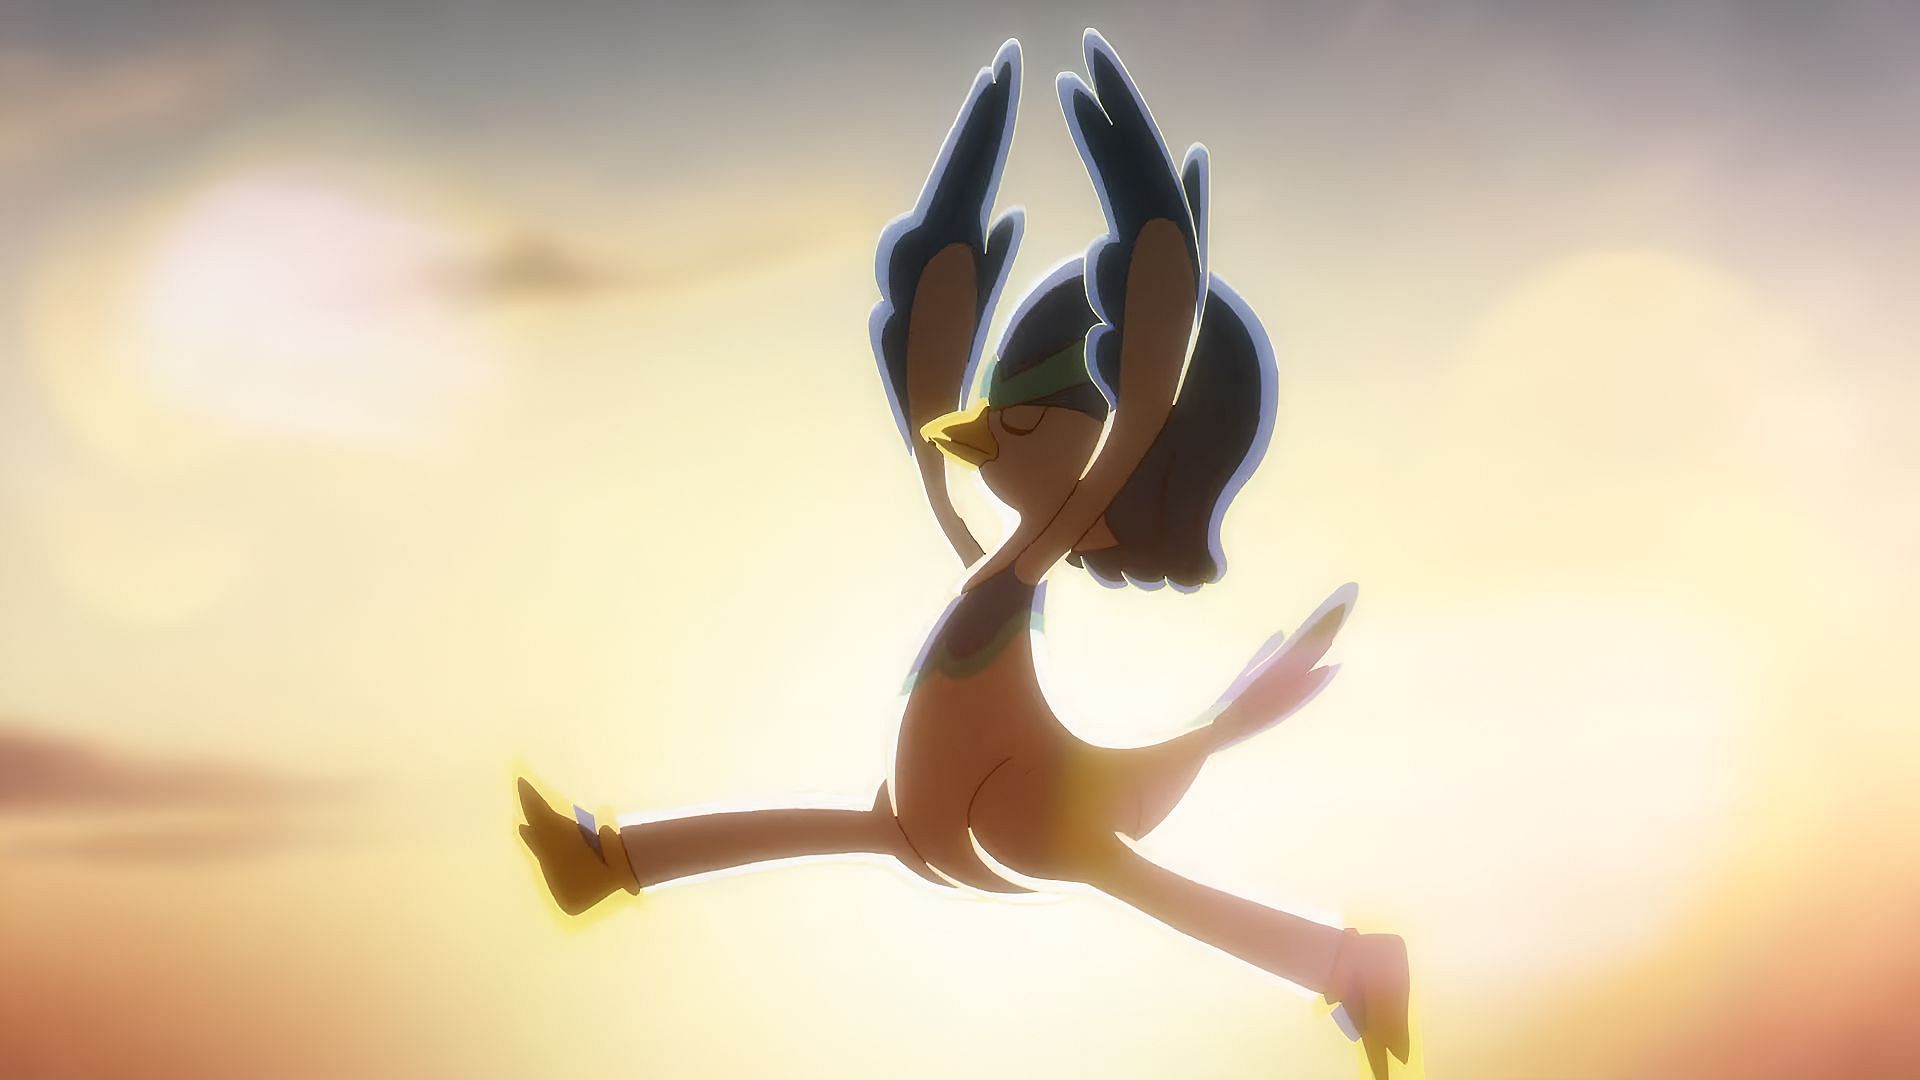 Quaxwell dances for Hohma in Pokemon: Paldean Winds Episode 3 (Image via The Pokemon Company)